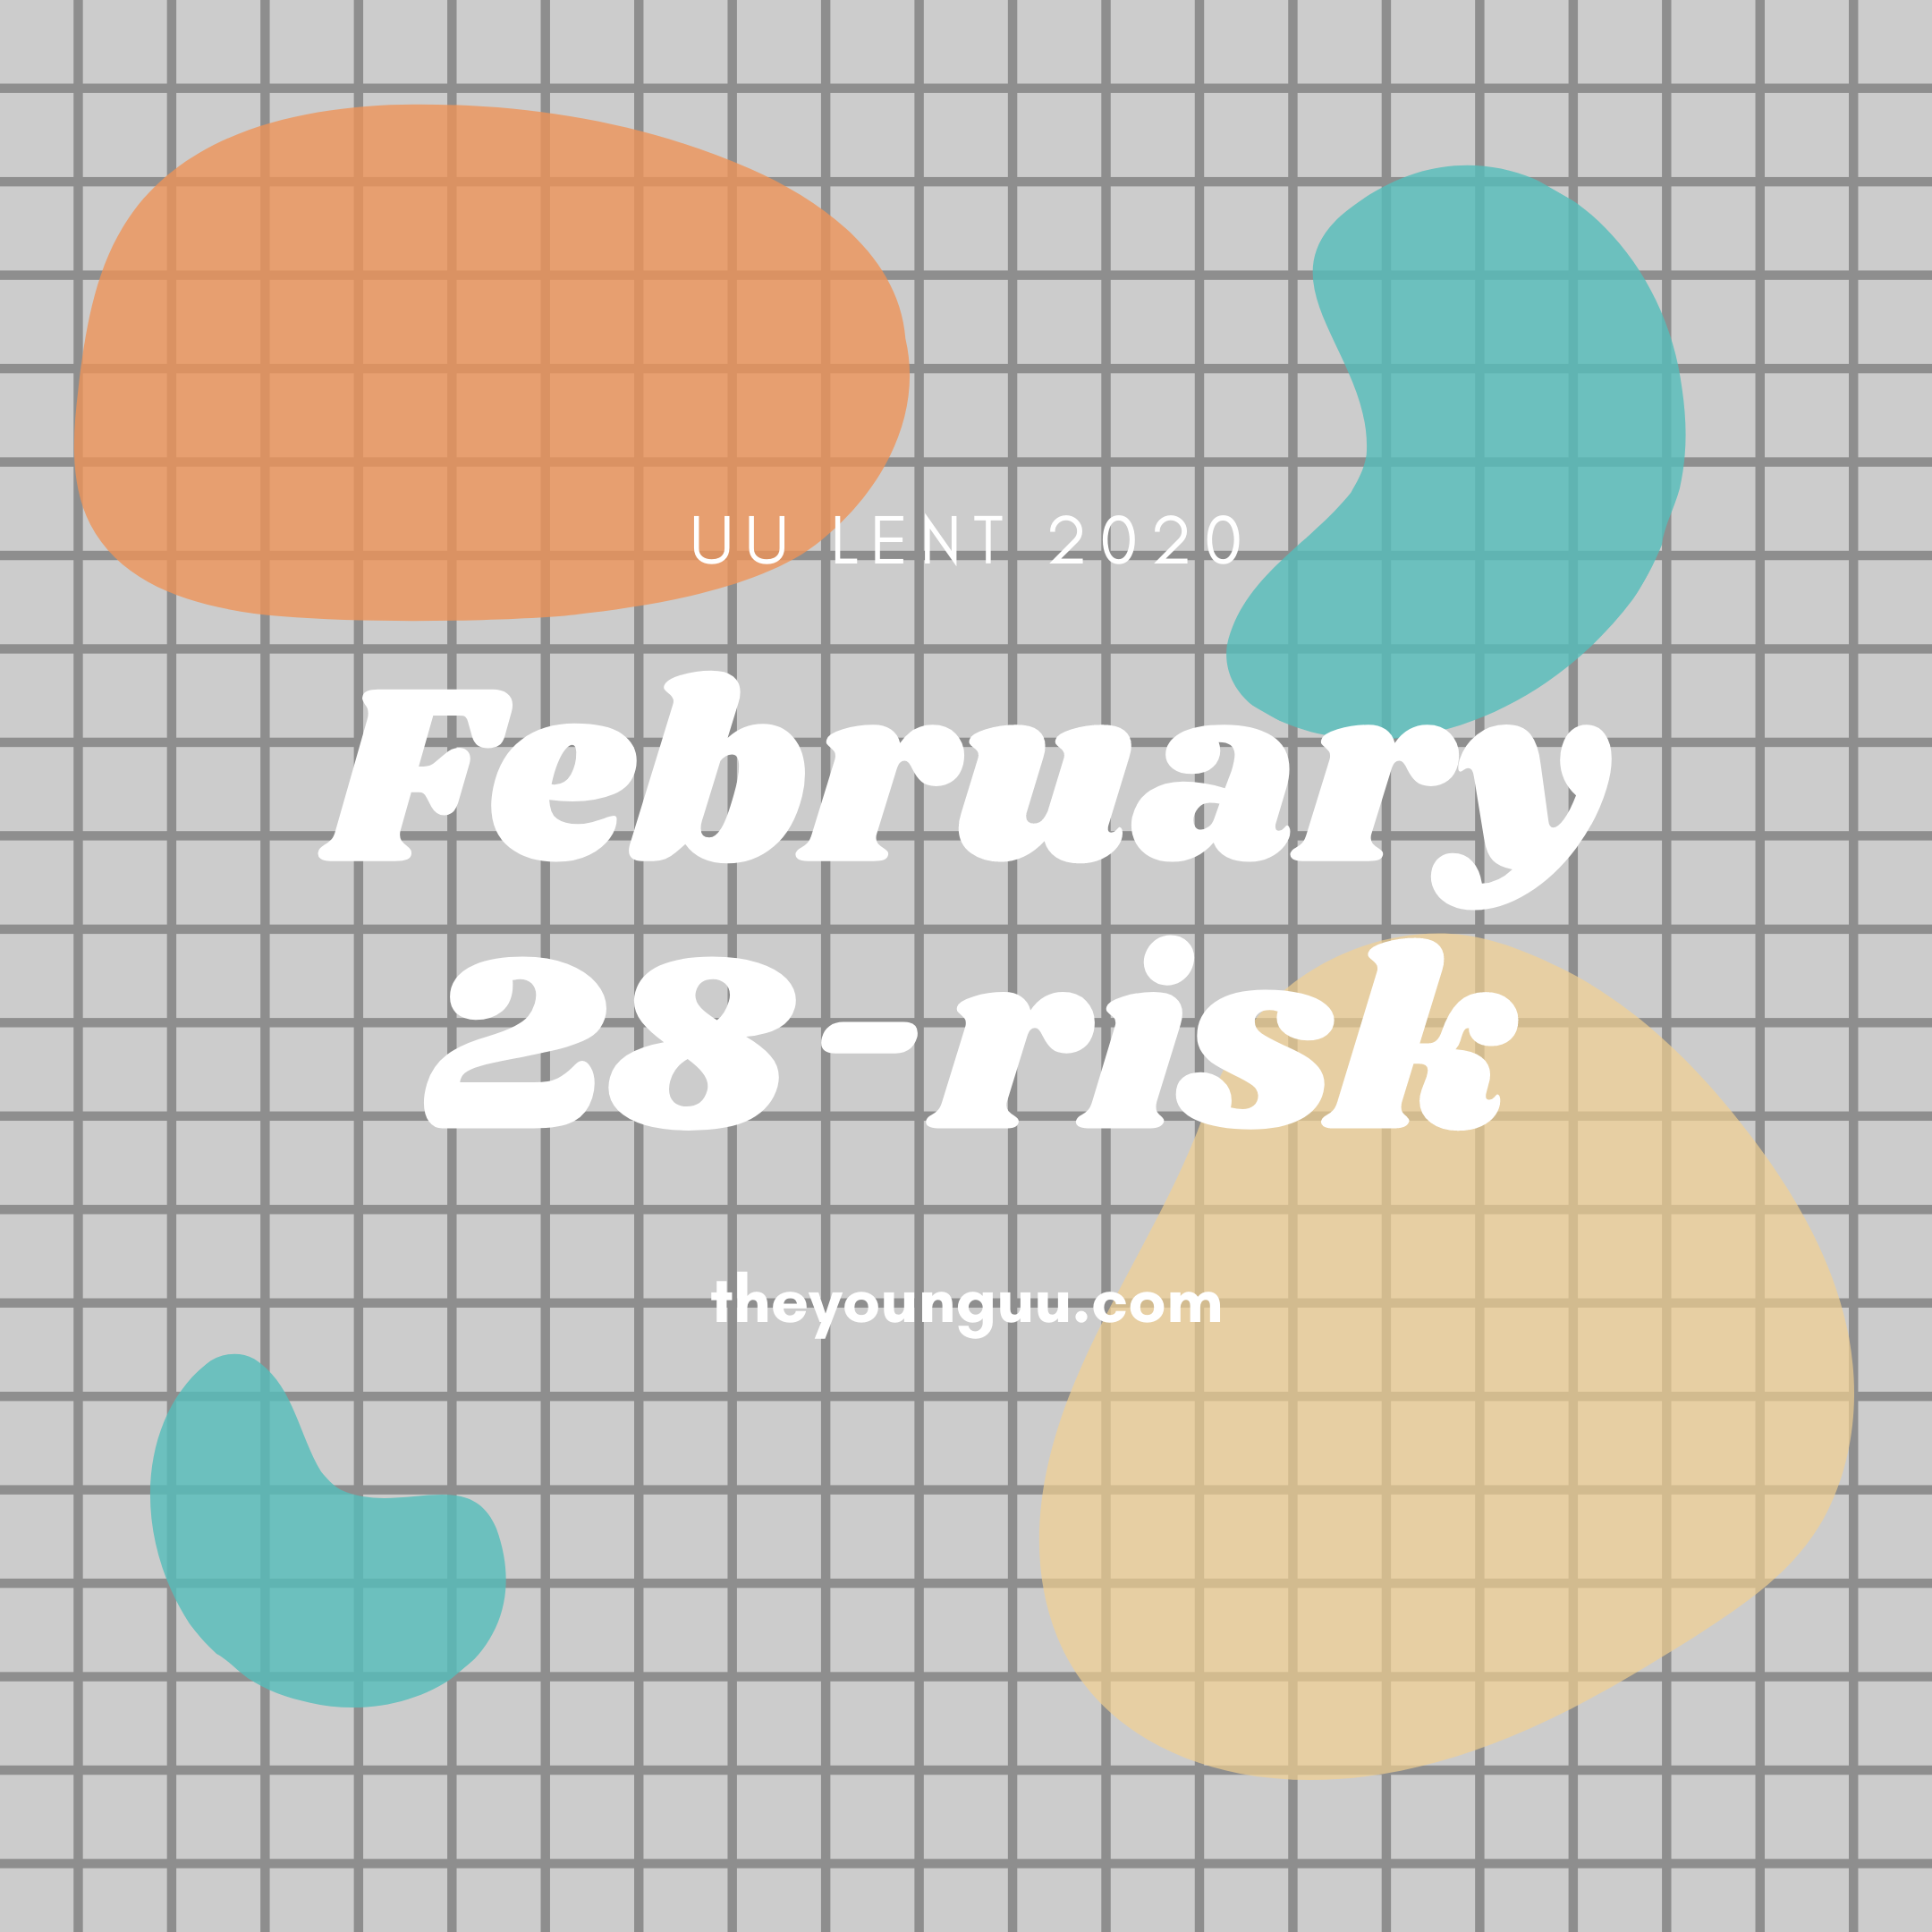 February 28-risk